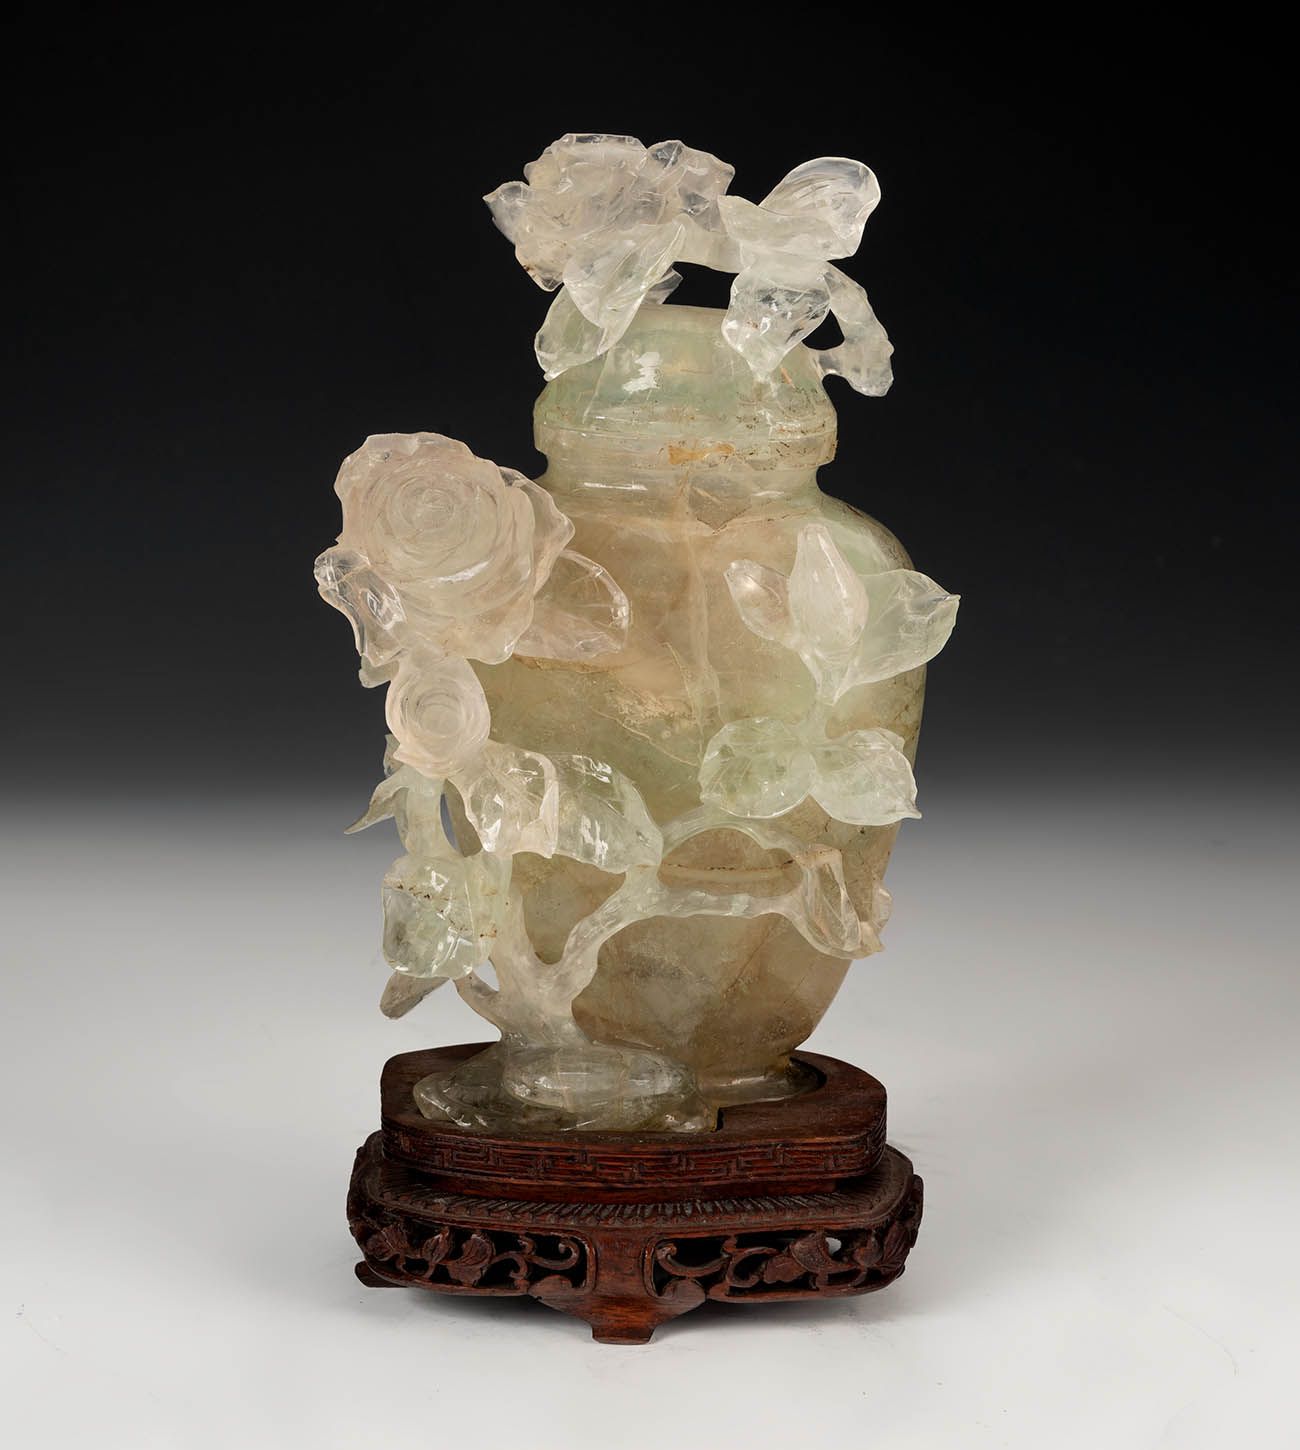 Null 有花的陶器。中国，20世纪。
木质底座上手工雕刻的萤石。
尺寸：16厘米（高）；3.5厘米（底）。
壶中有精雕细琢的半透明玉石，装饰有玫瑰花。它矗立在&hellip;